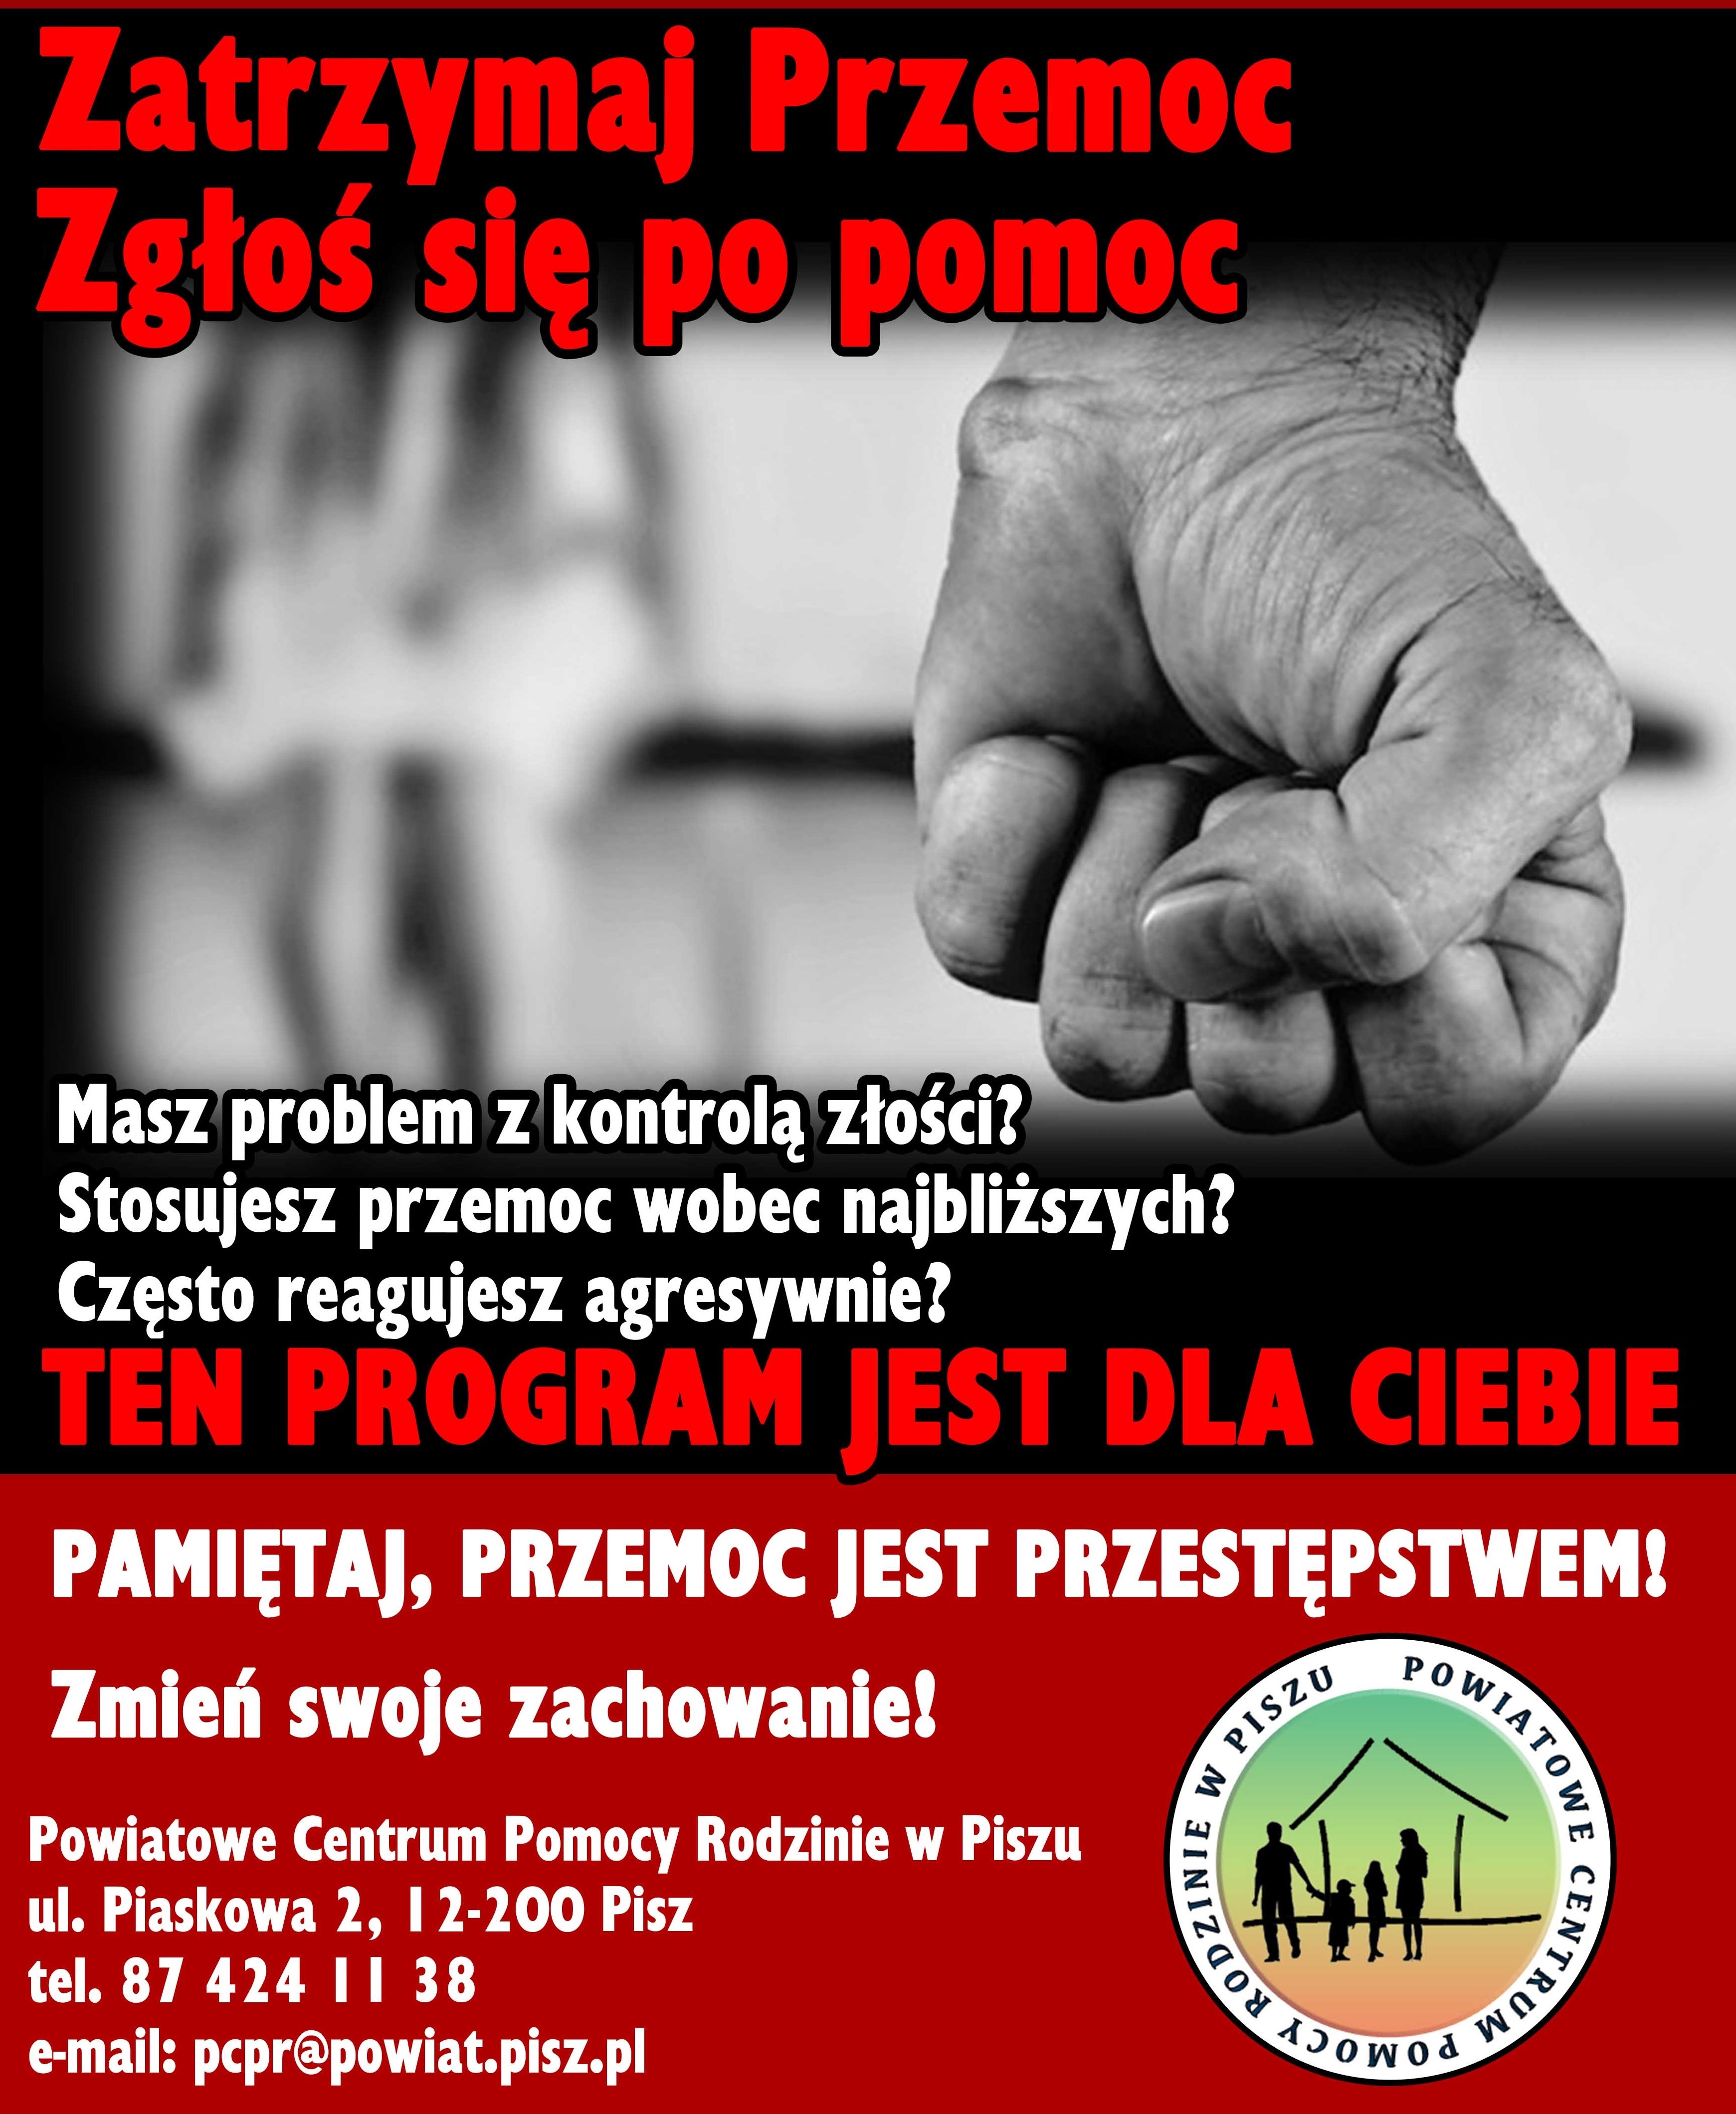 Powiatowe Centrum Pomocy Rodzinie w Piszu informuje